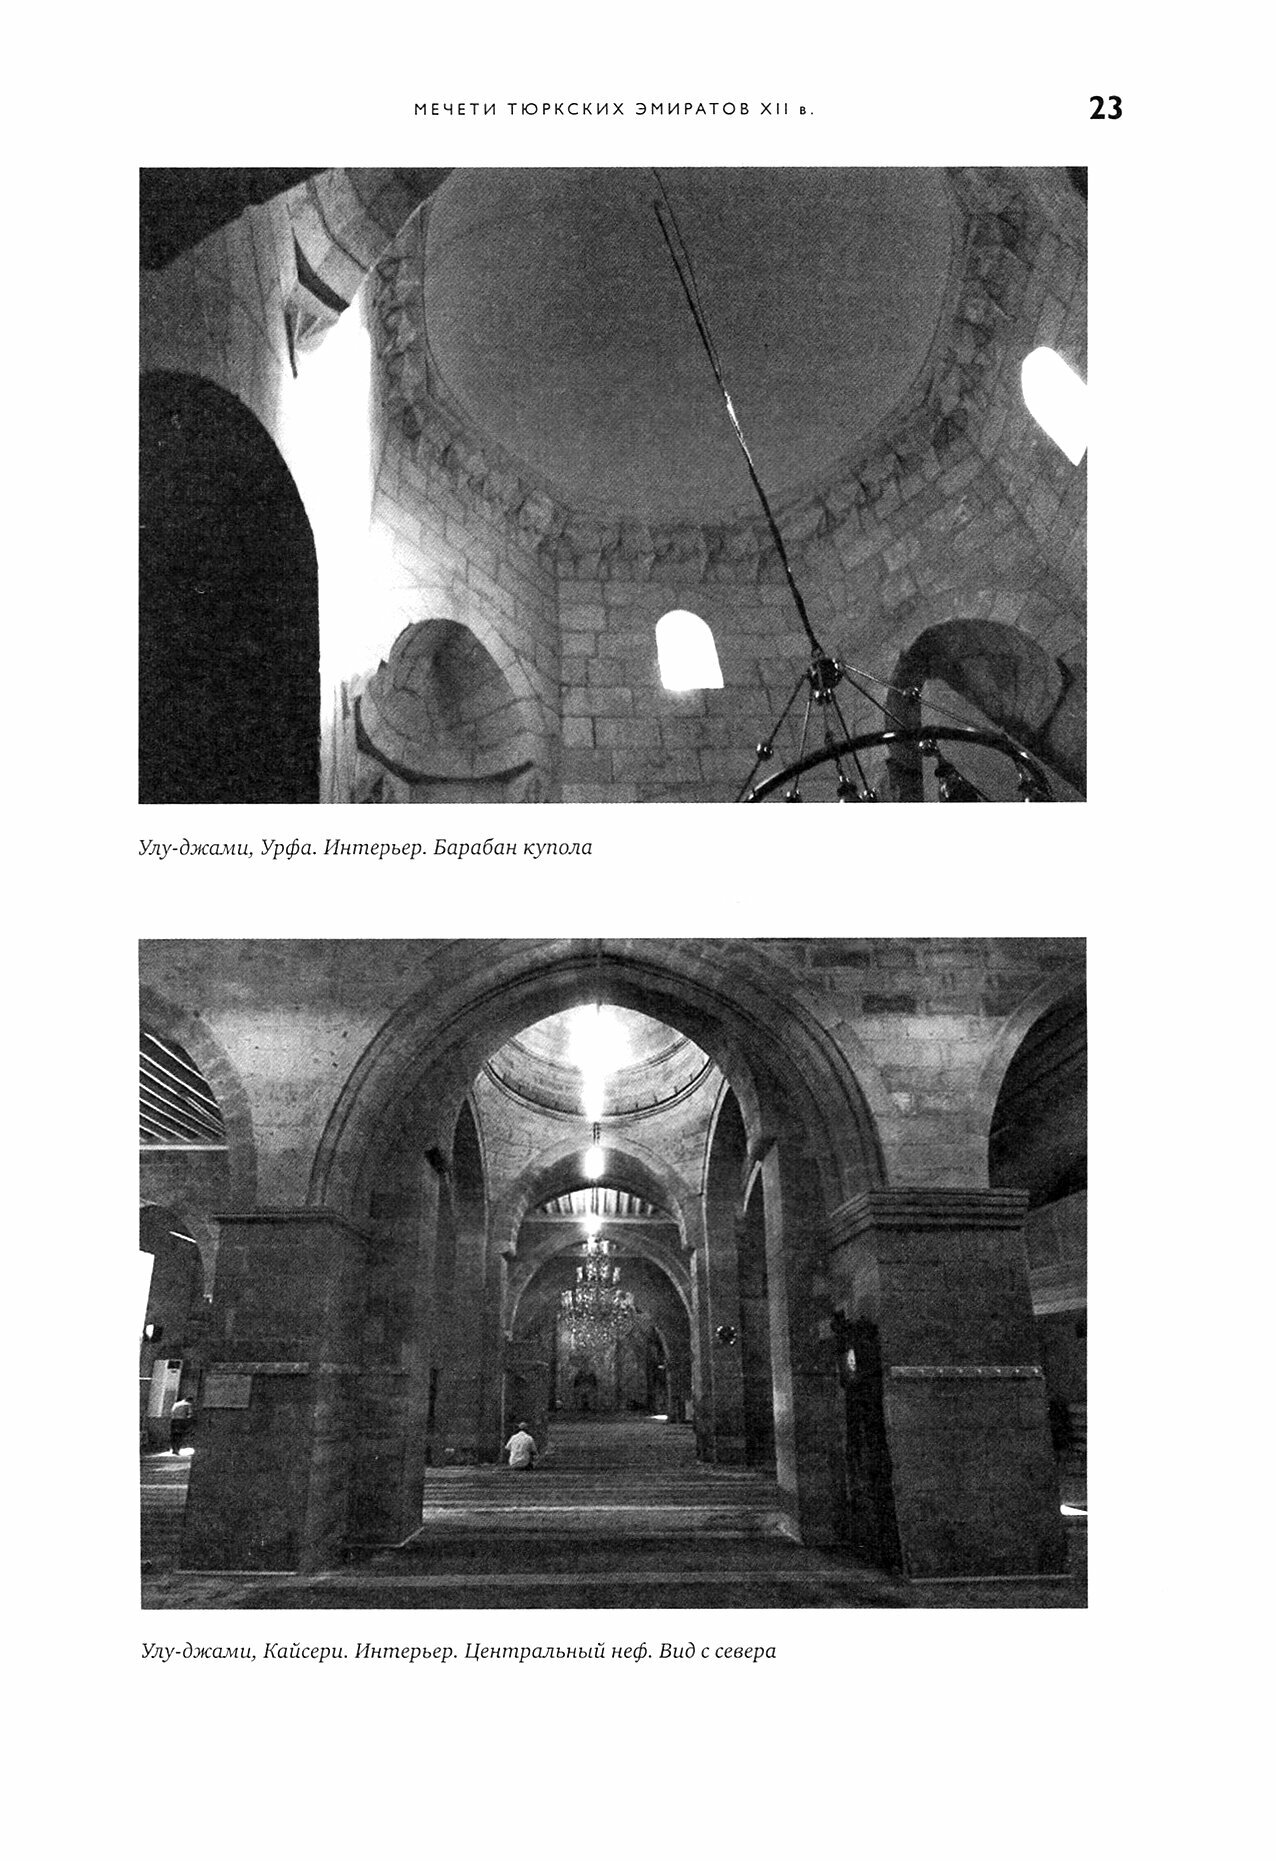 Эволюция архитектуры османской мечети - фото №4